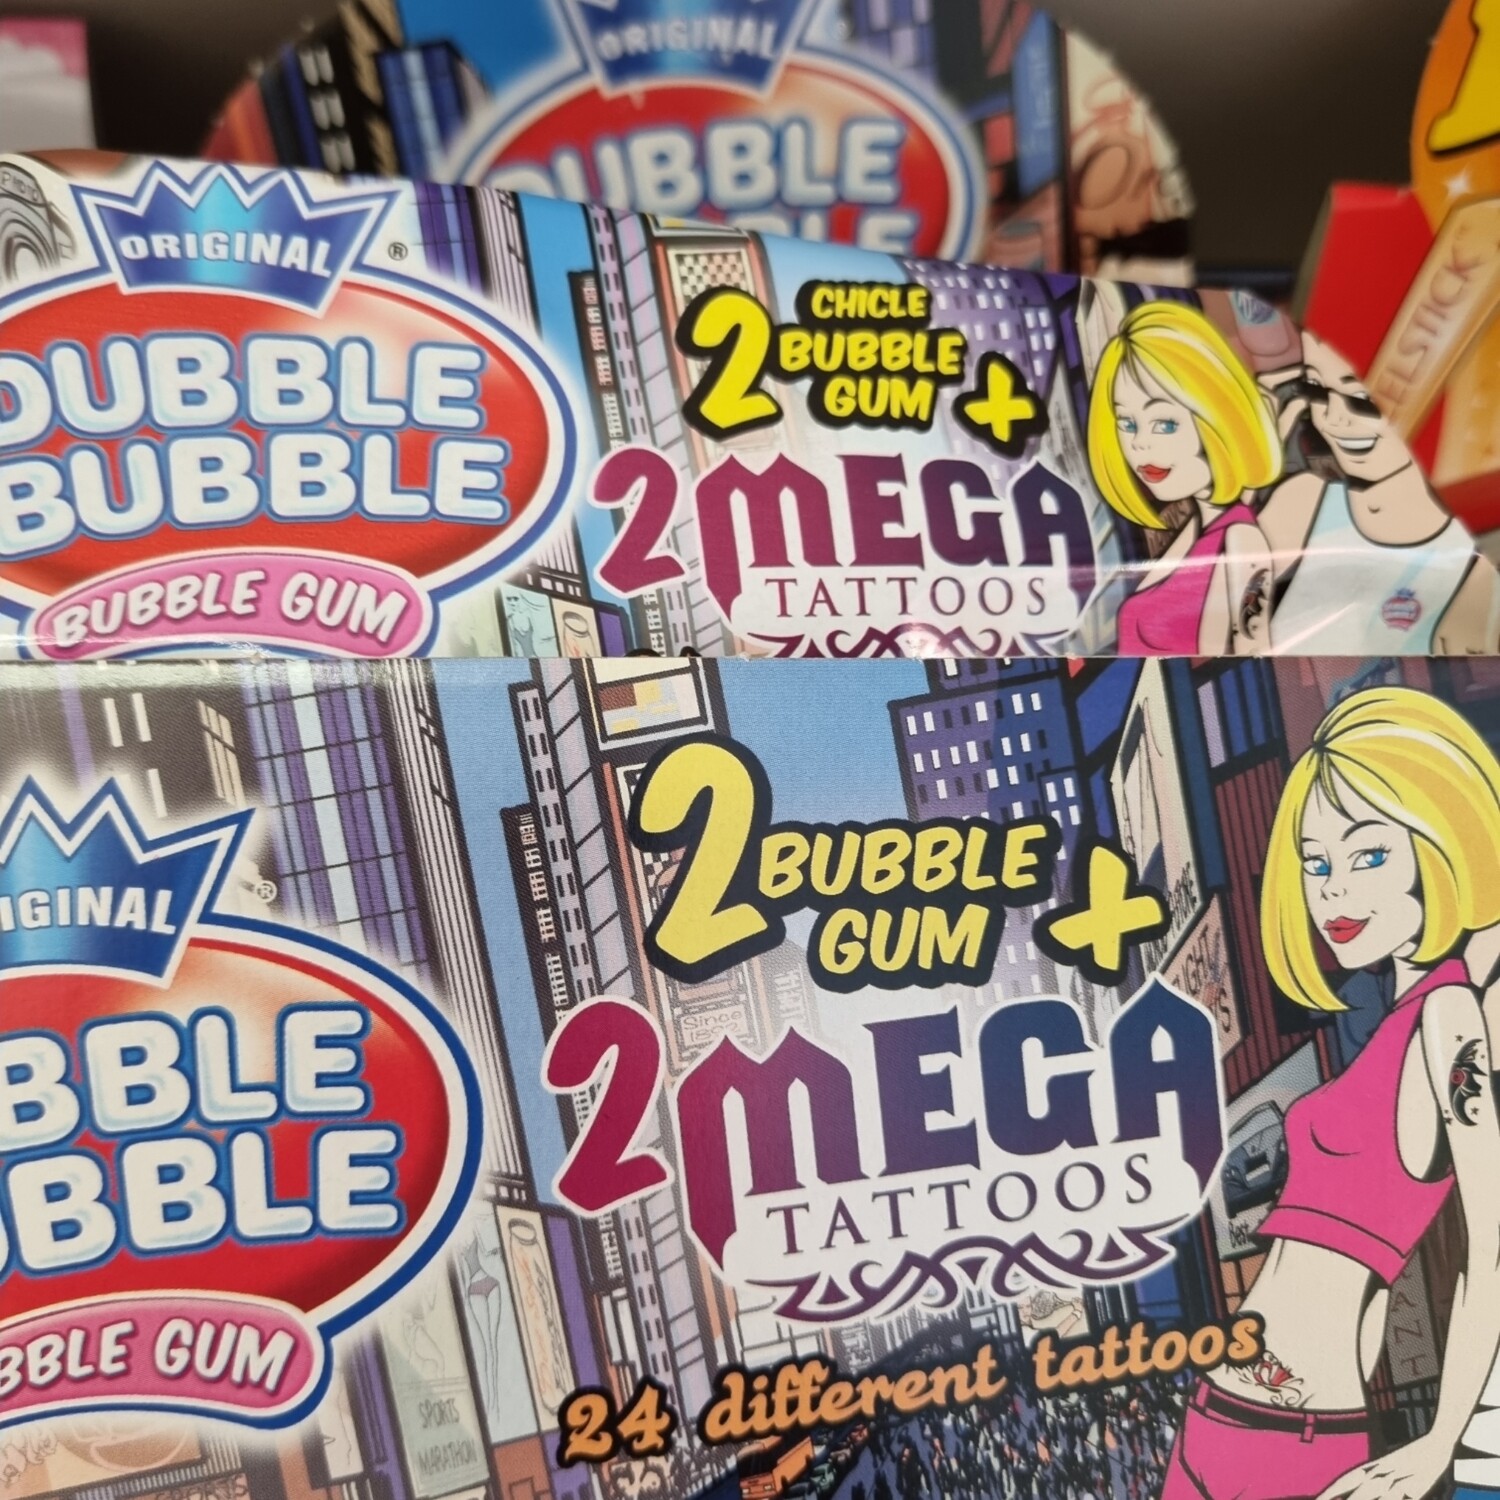 2 bubble gum met tattoos